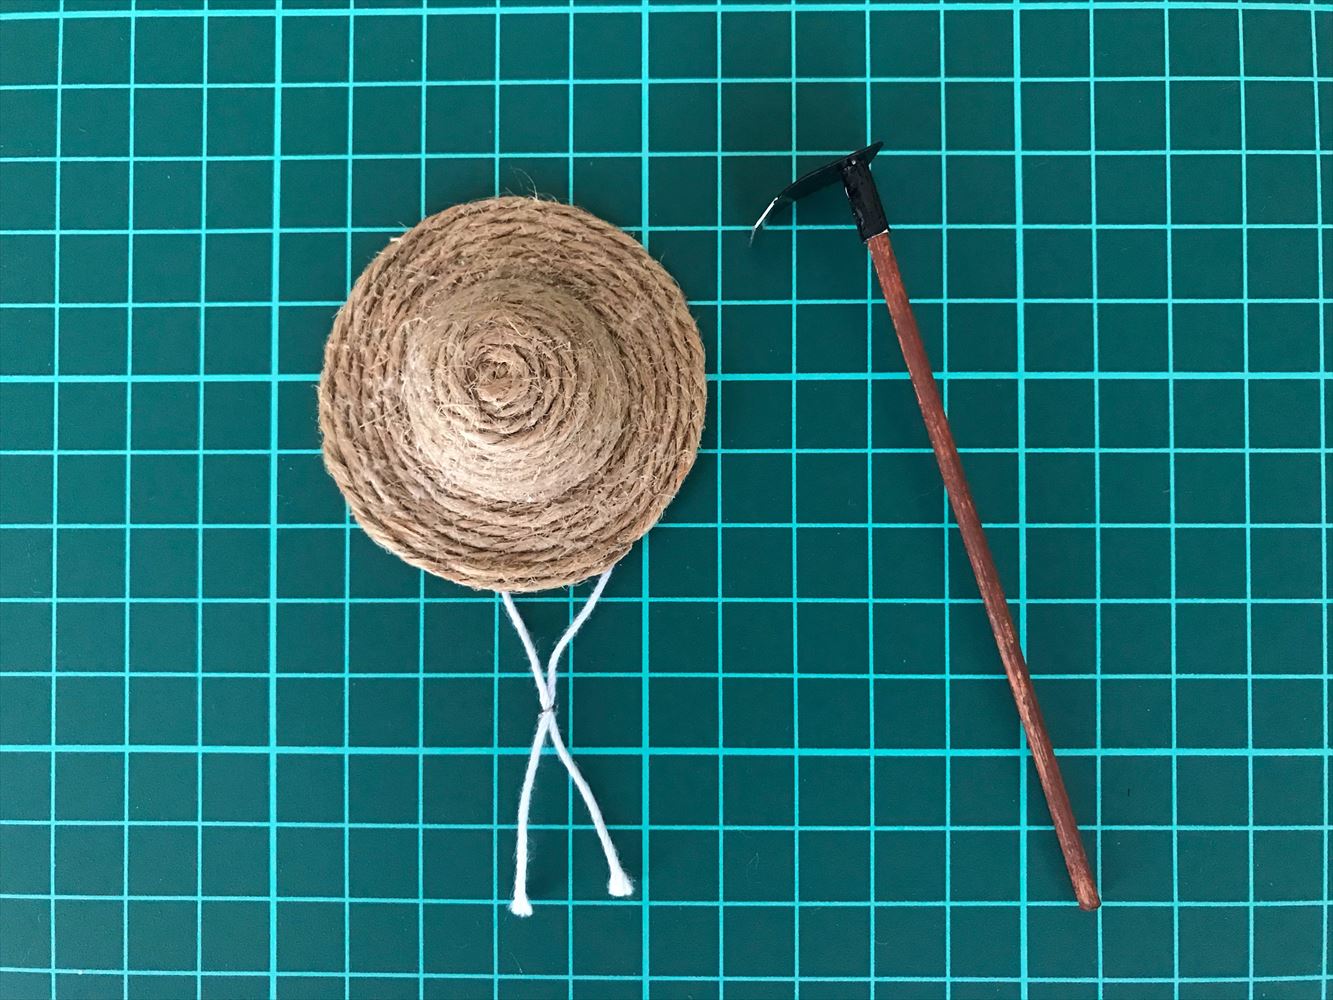 麻ひものミニチュア麦わら帽子の作り方と鍬の紹介 Saluton Mondo 和花の作業部屋